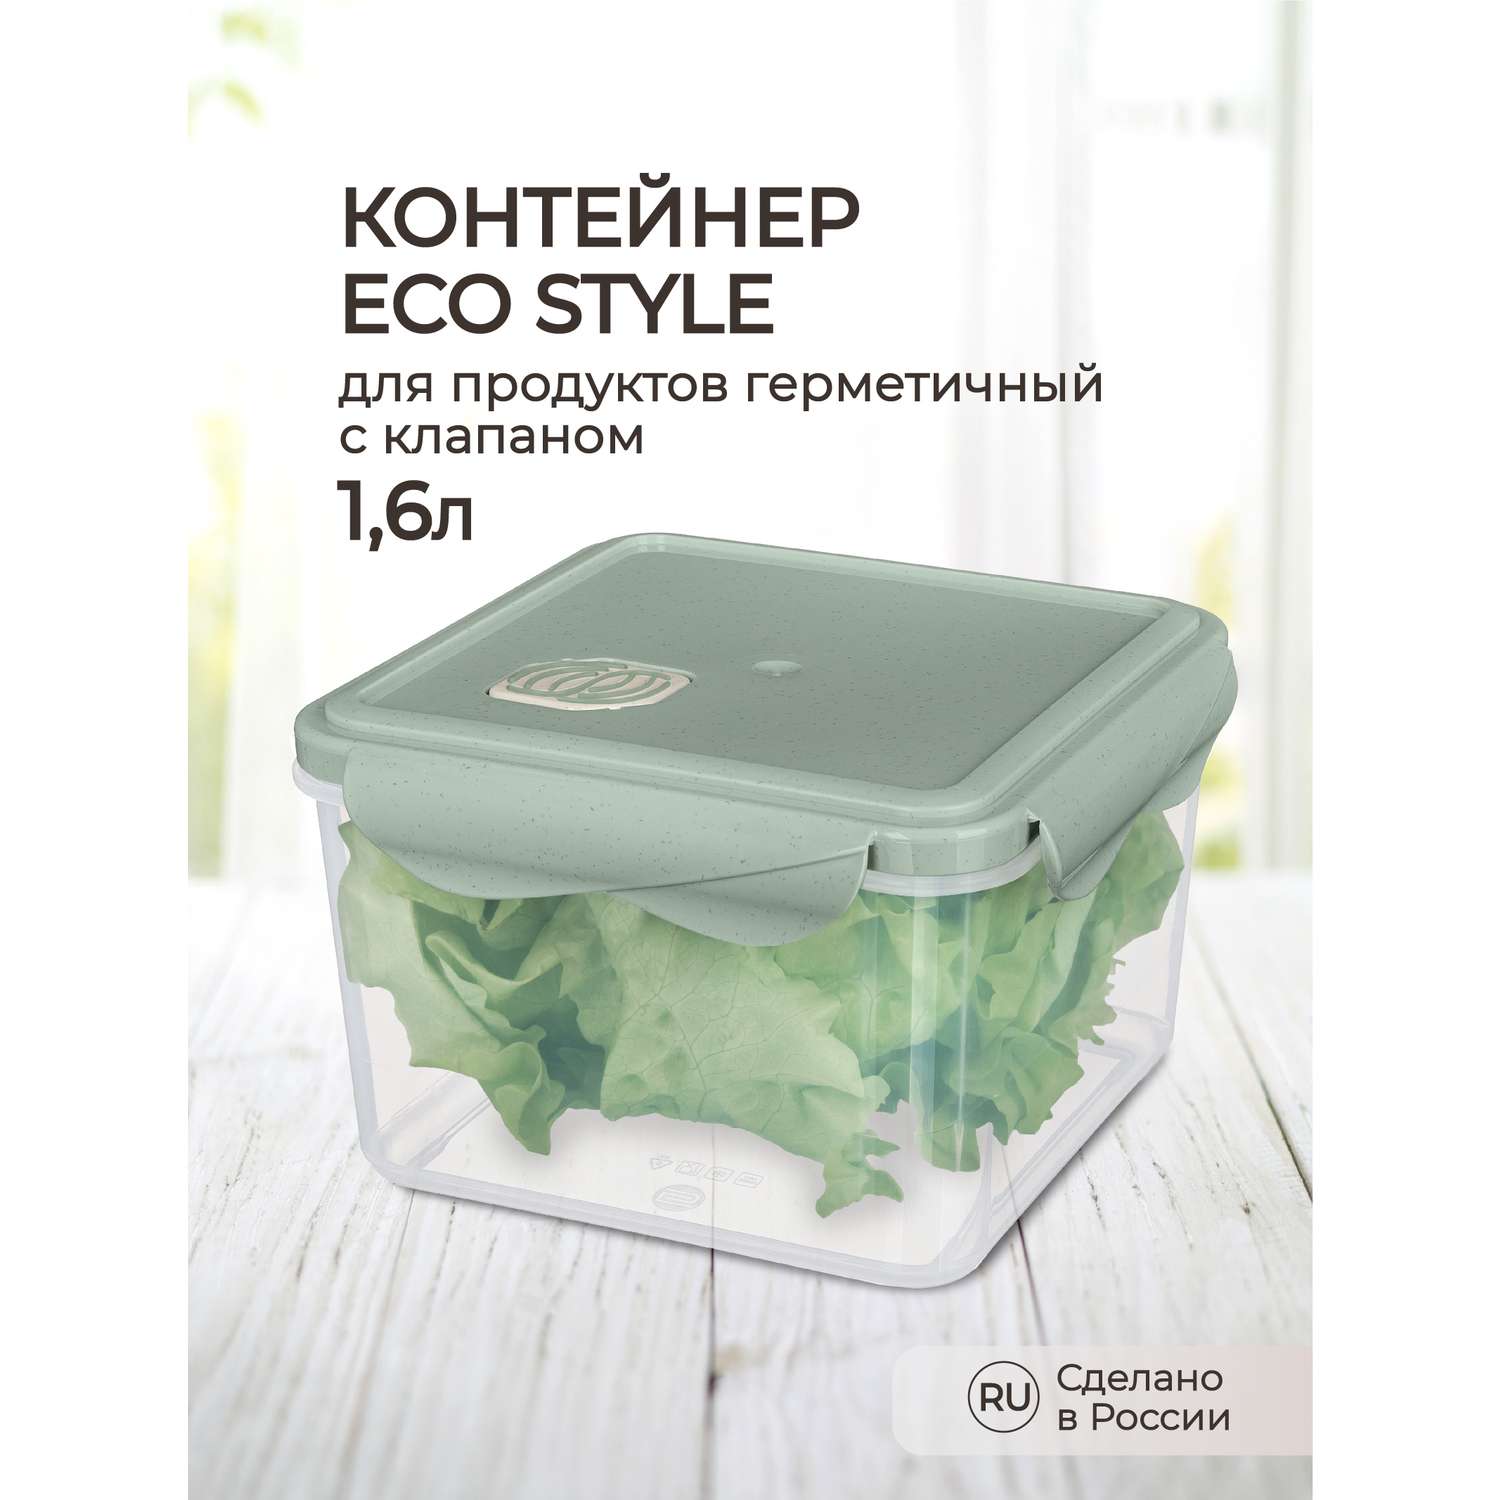 Контейнер Phibo для продуктов герметичный с клапаном Eco Style квадратный 1.6л зеленый флэк - фото 1